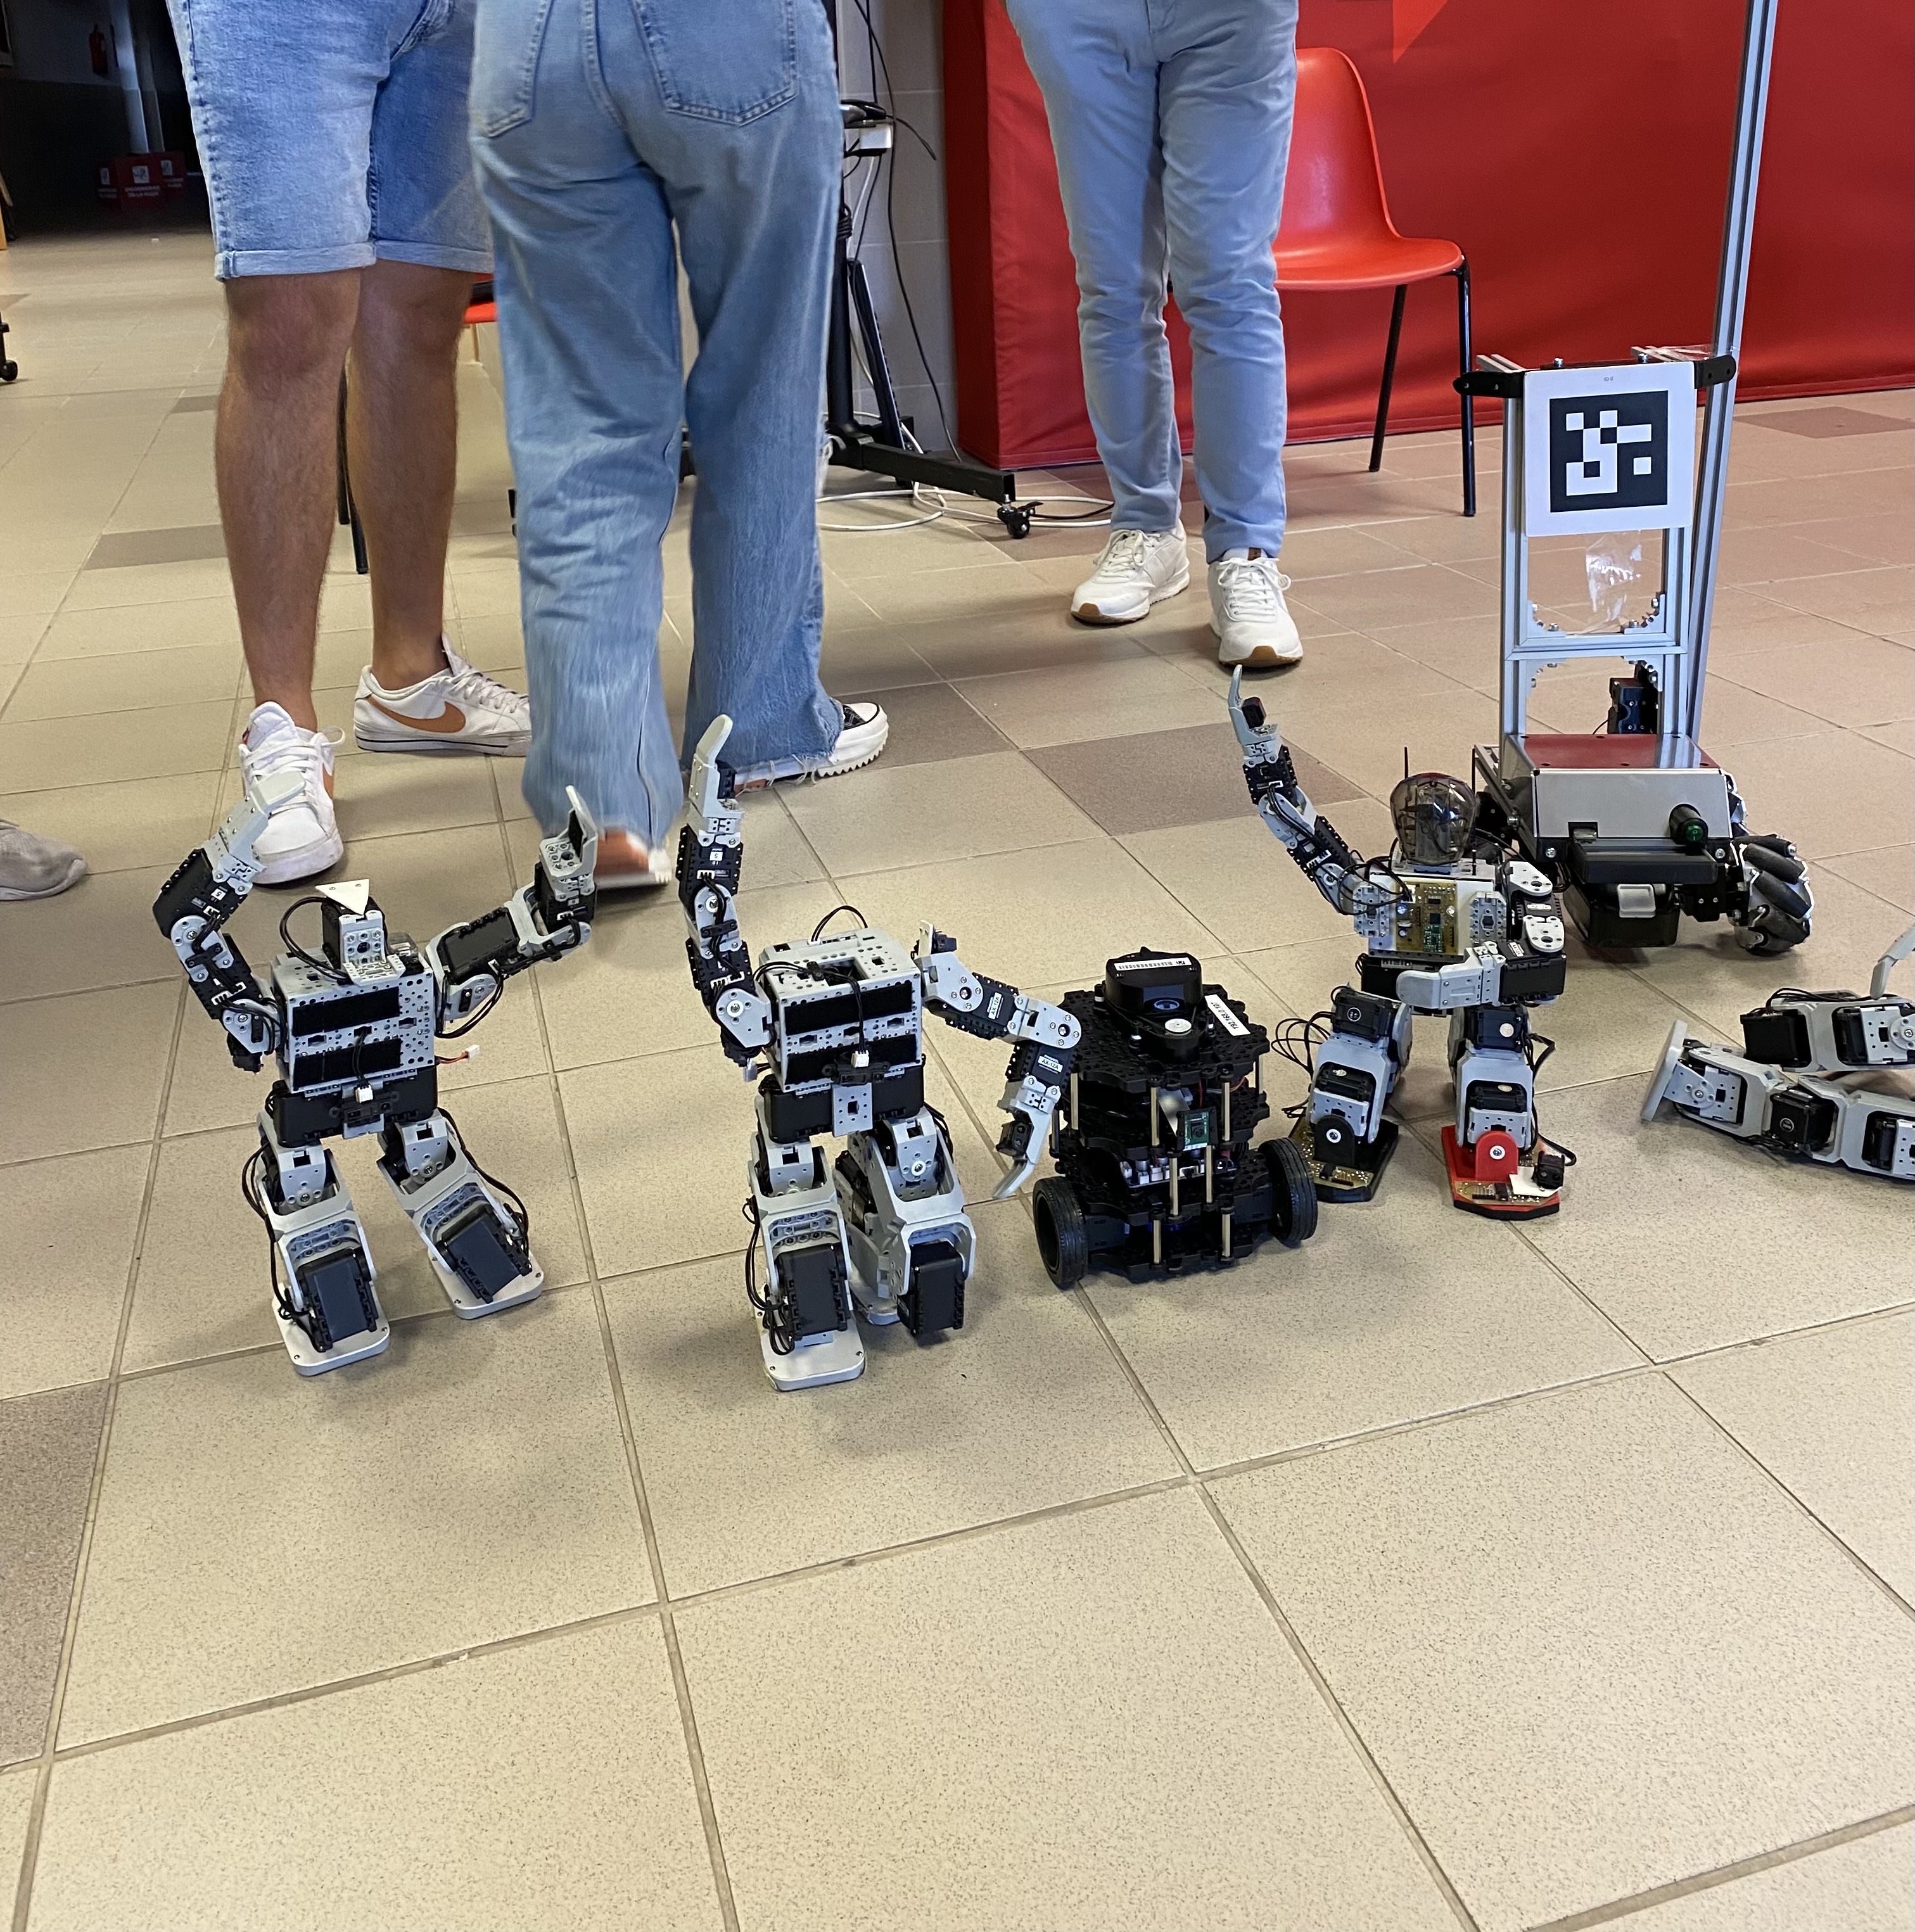  subcampionat-ceabot-uji-robotics-team IMG_4496